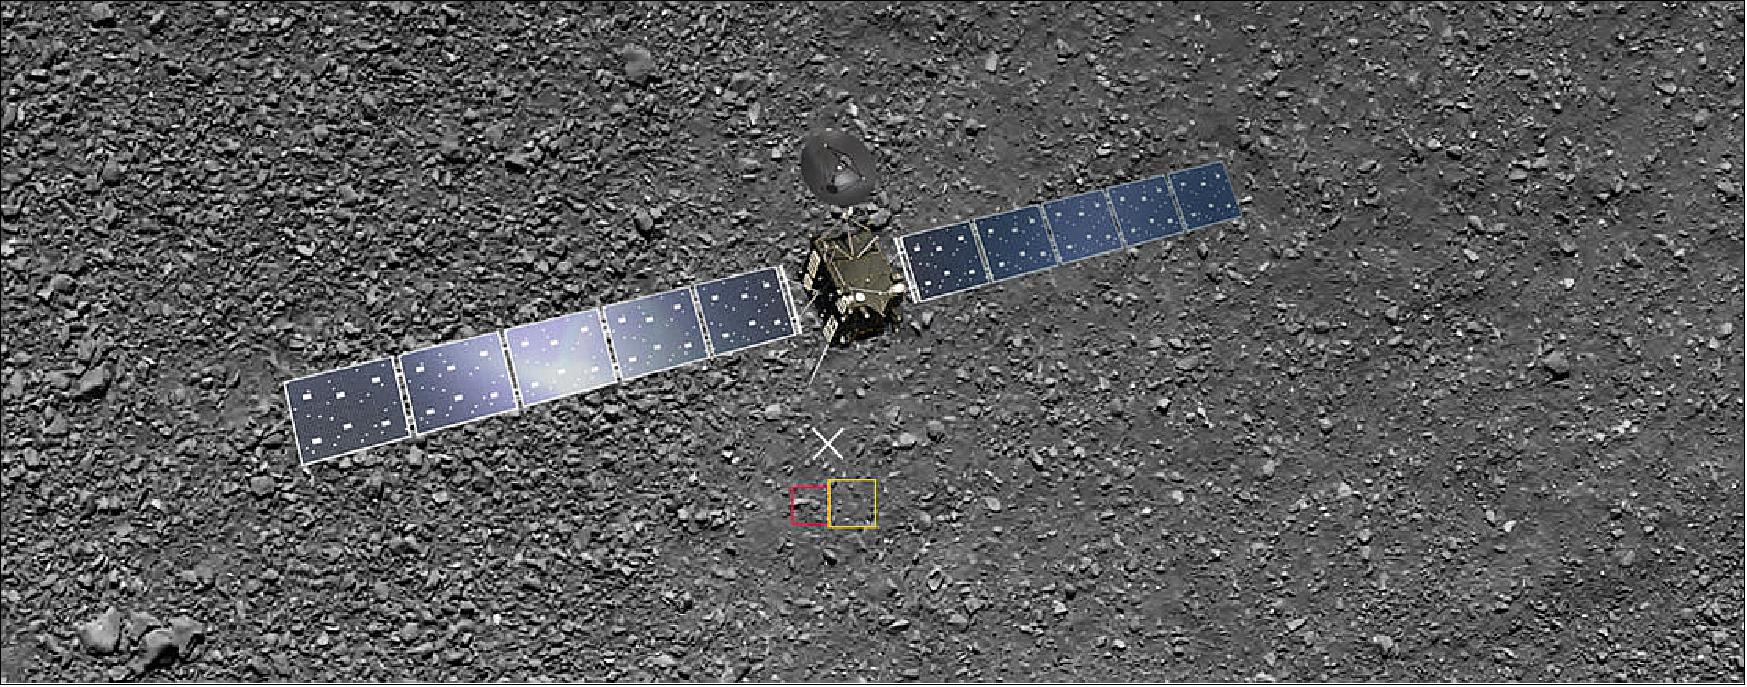 Figure 80: Rosetta's landing site to scale (image credit: ESA/Rosetta/MPS for OSIRIS Team MPS/UPD/LAM/IAA/SSO/INTA/UPM/DASP/IDA; spacecraft: ESA/ATG medialab)